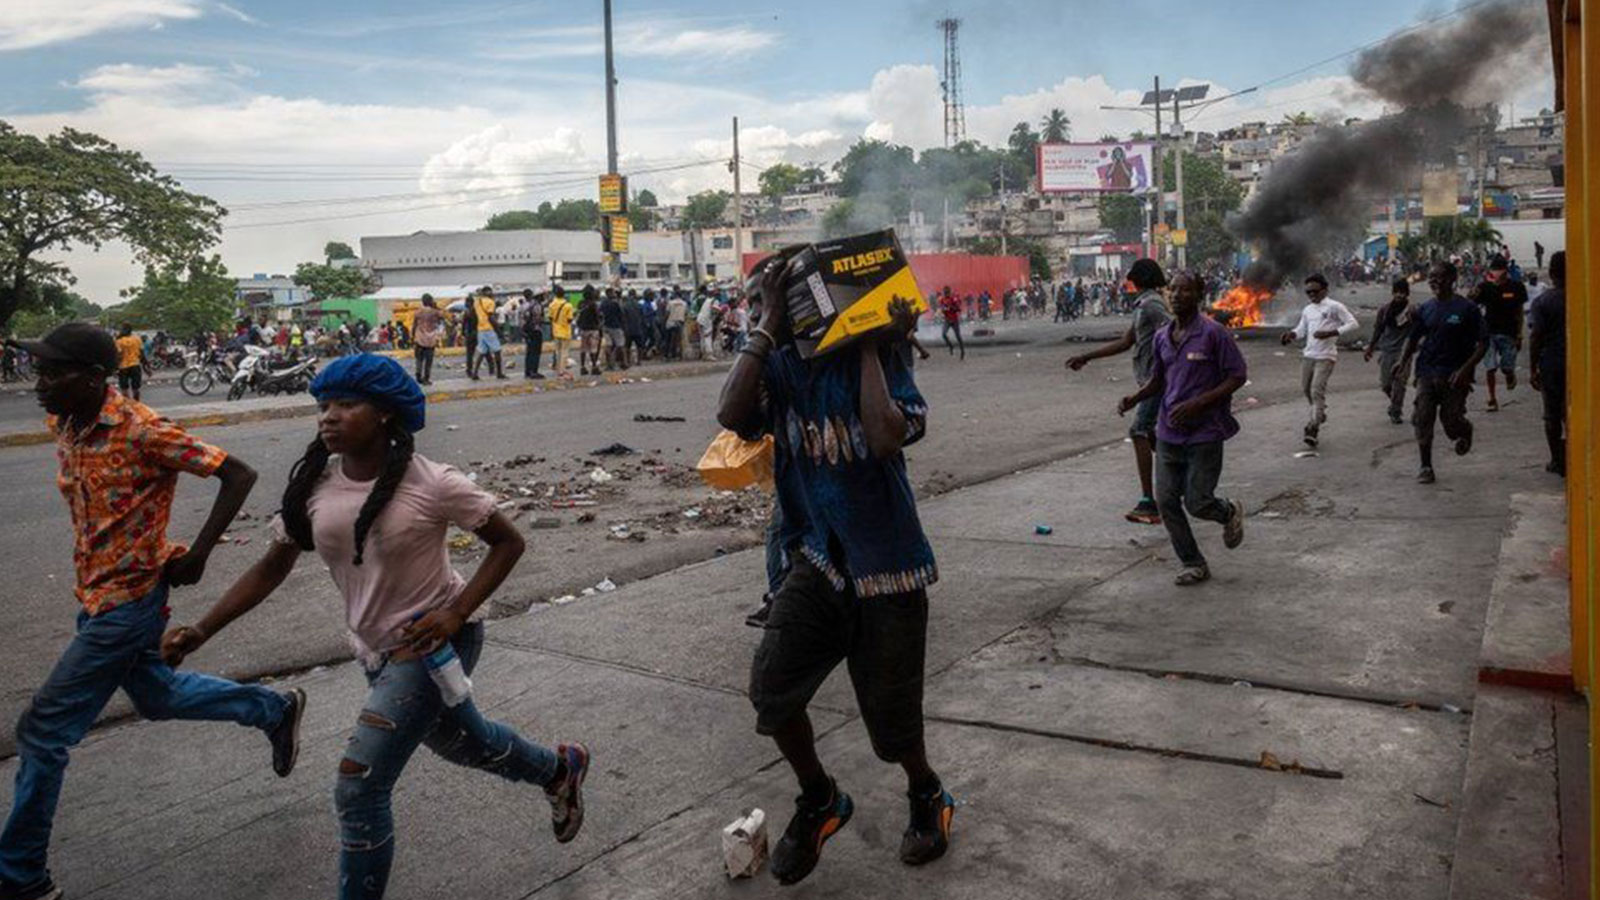 Haiti riots